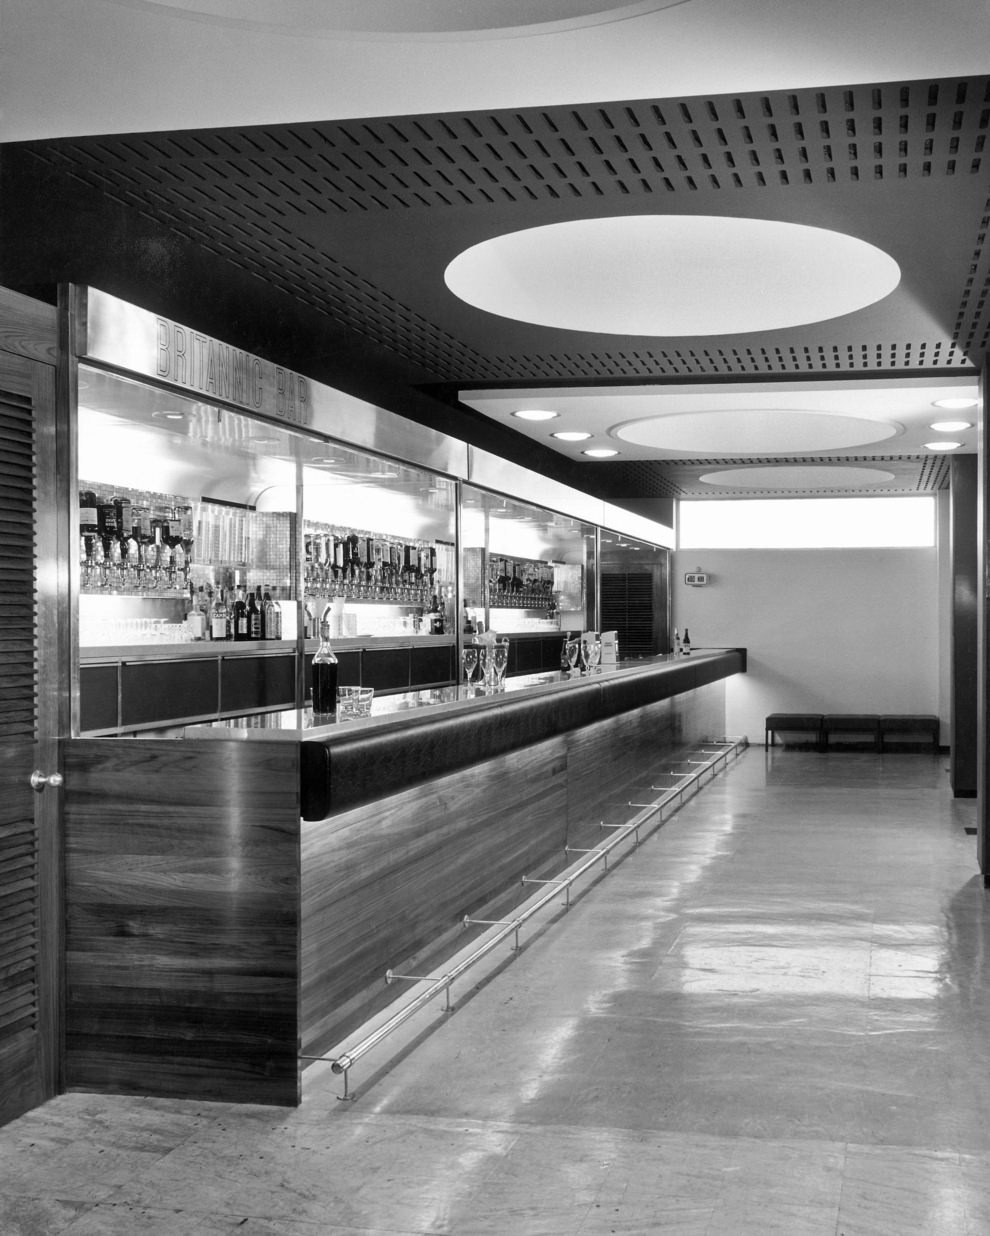 Britannic Bar, 1950s.